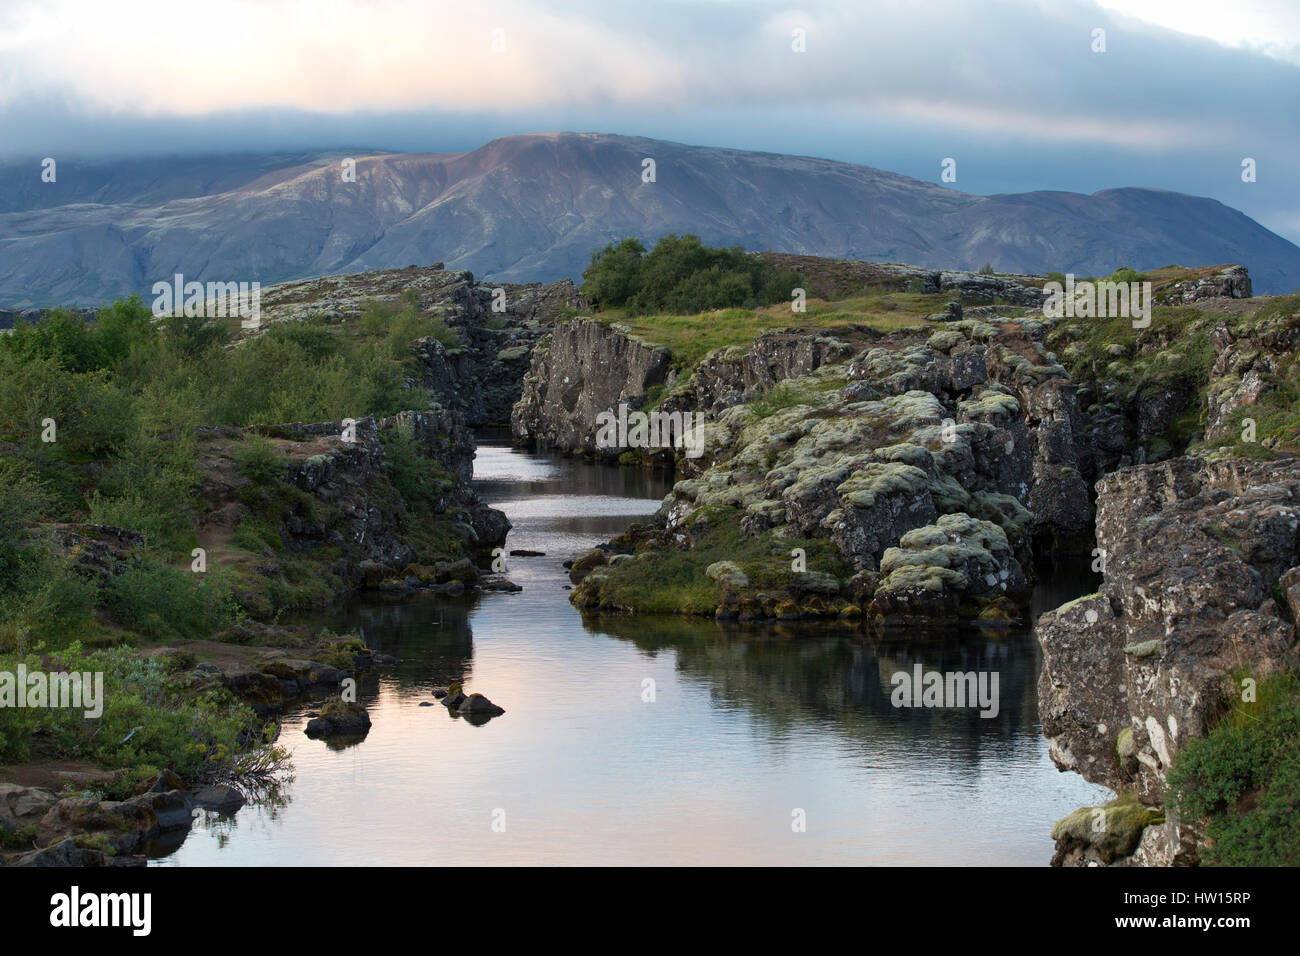 Typische isländische Landschaft mit Vulkanen, Bergen und Fluss bei Sonnenuntergang. Stockfoto